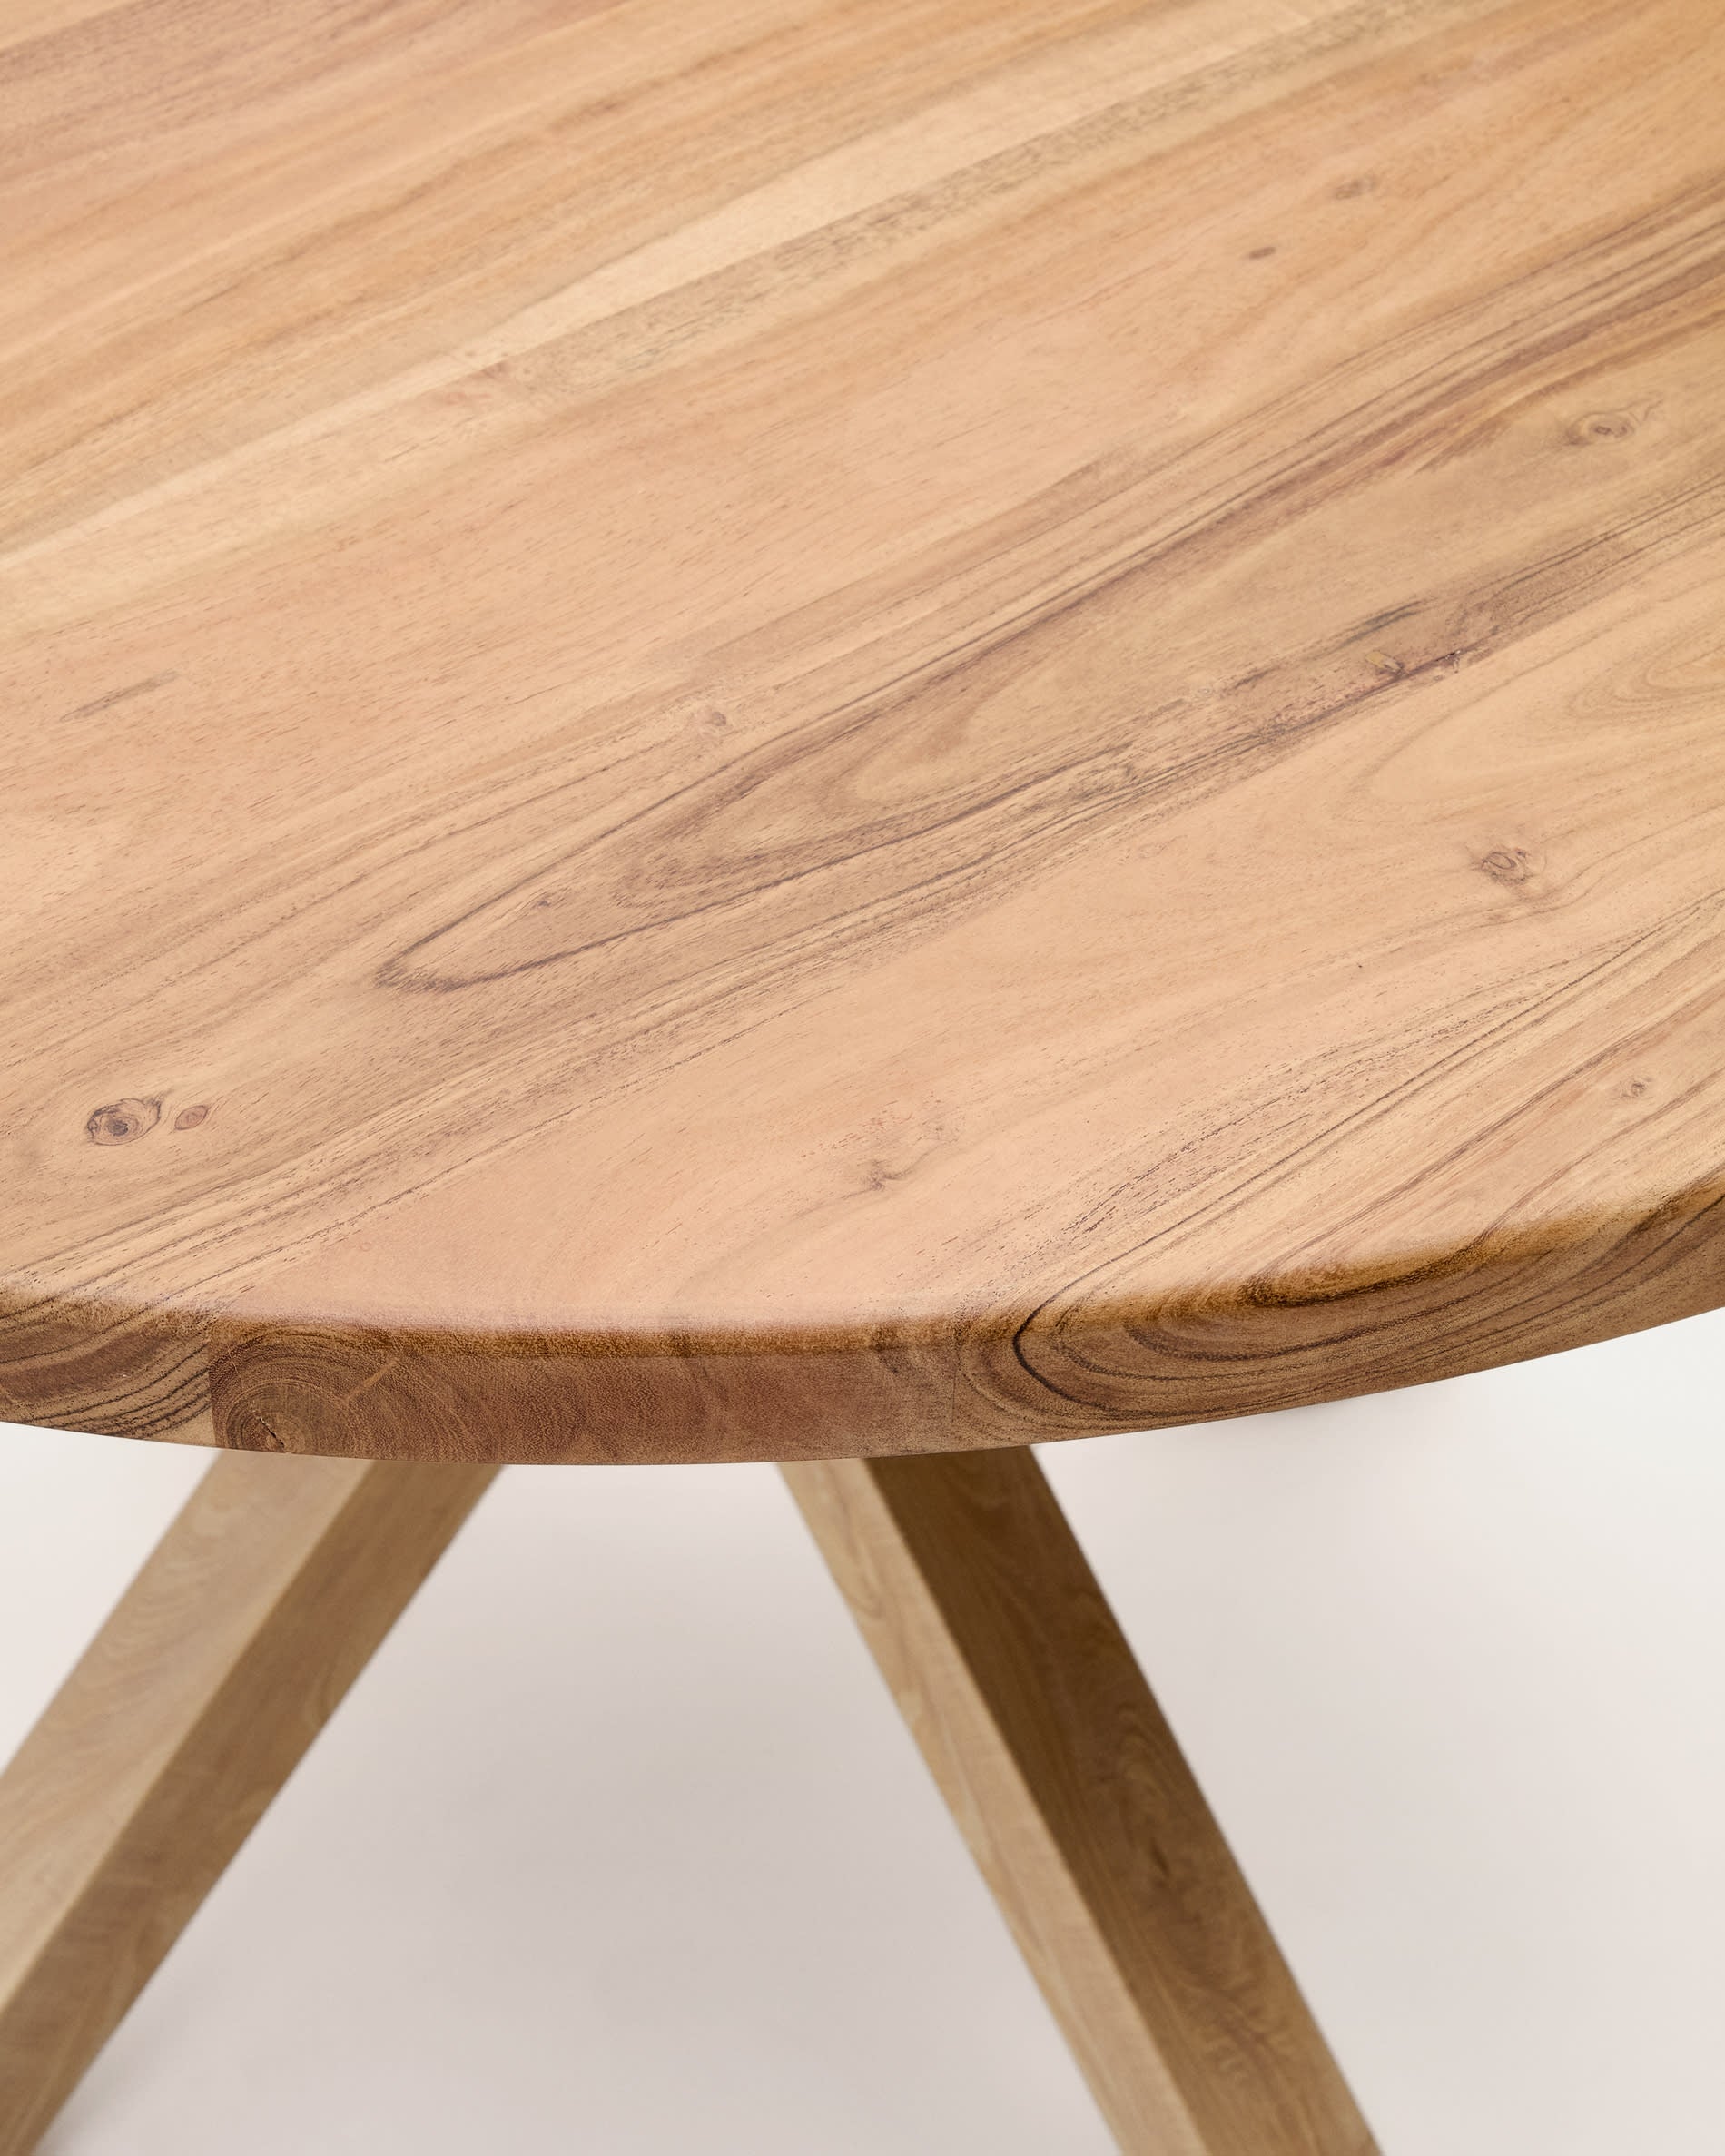 Argo kerek asztal tömör akácfából és fa hatású acéllábakkal Ø 120 cm